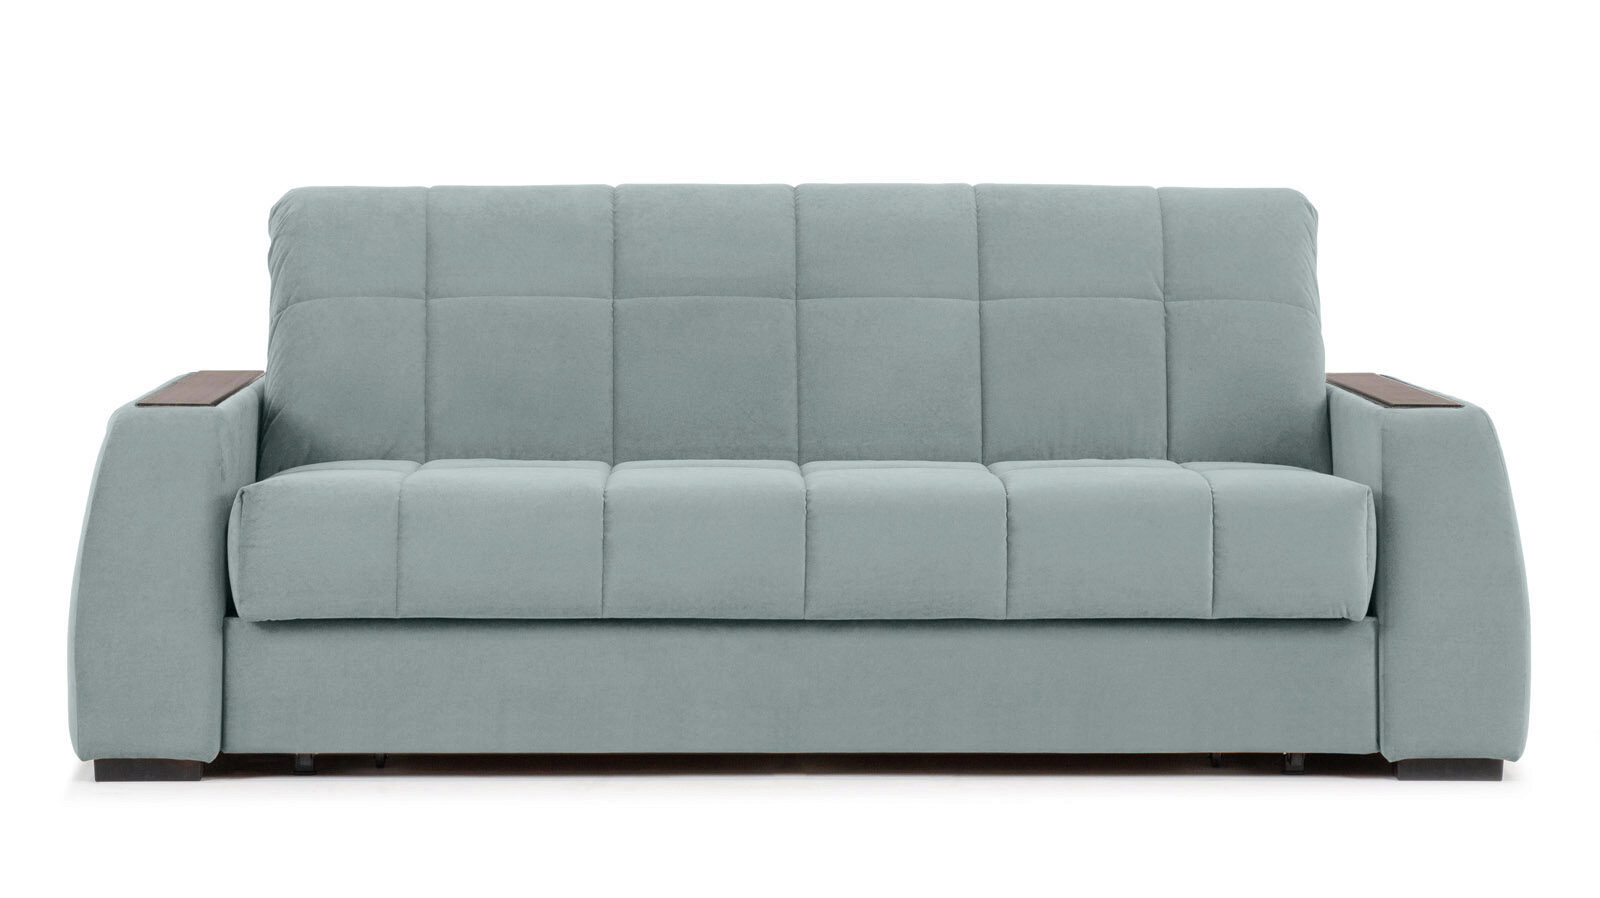 Прямой диван Domo Pro c полками цвет Венге, стежка квадрат люстра онлайн ок 3х15вт е27 модель br 00217 венге белый